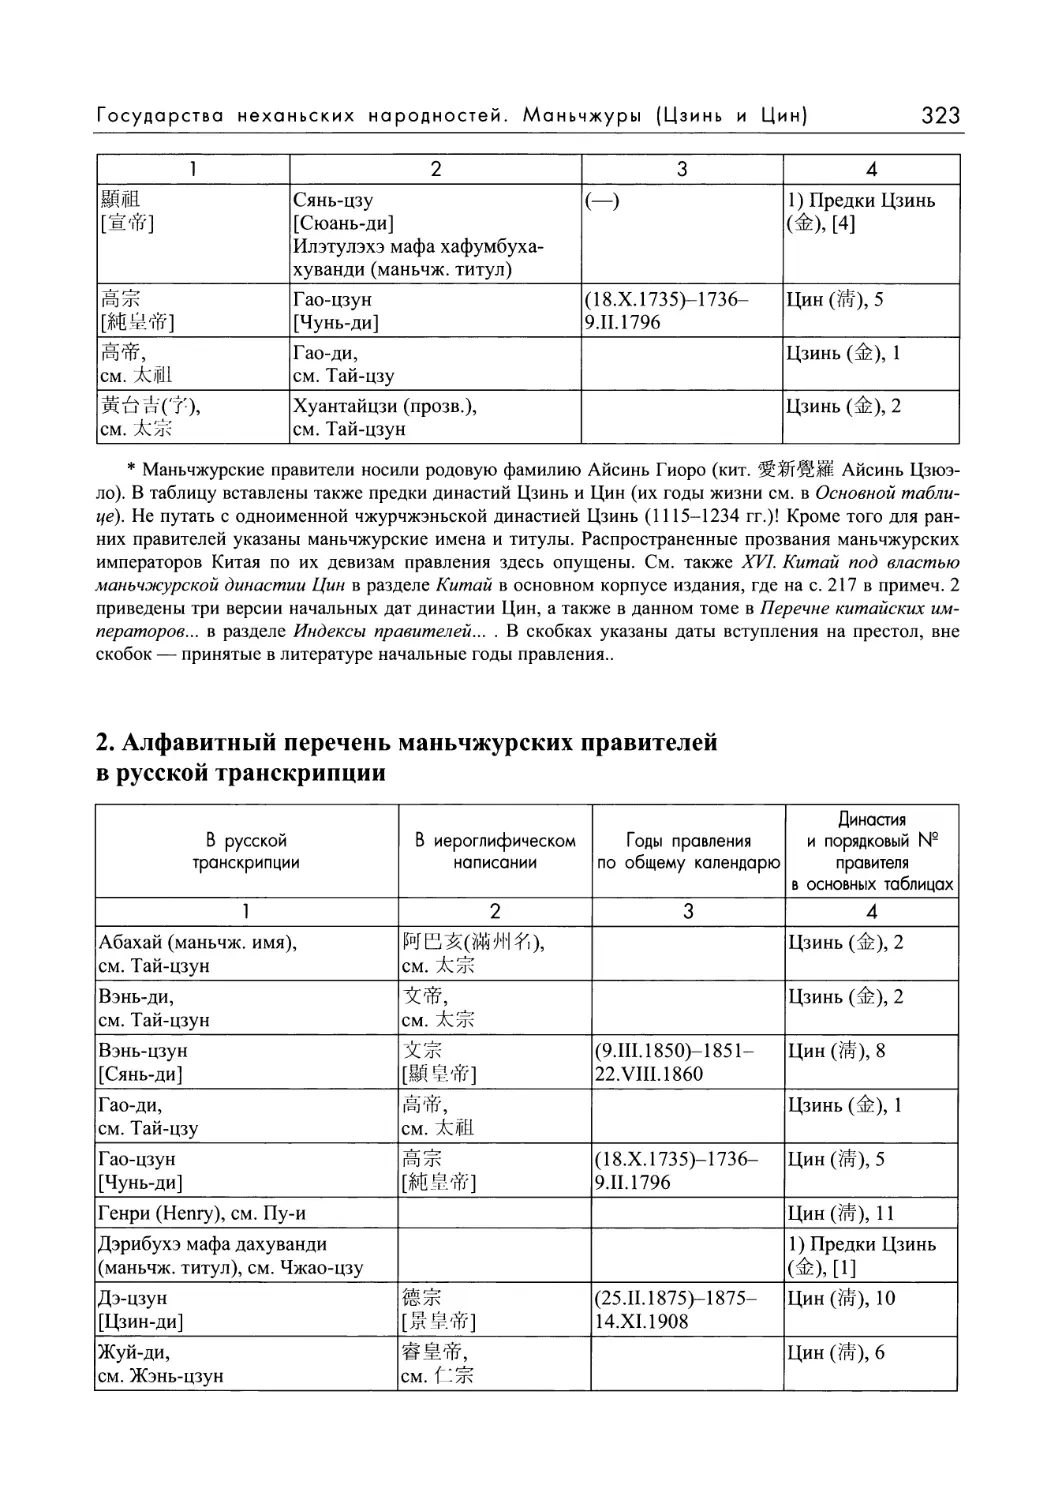 2. Алфавитный перечень маньчжурских правителей в русской транскрипции